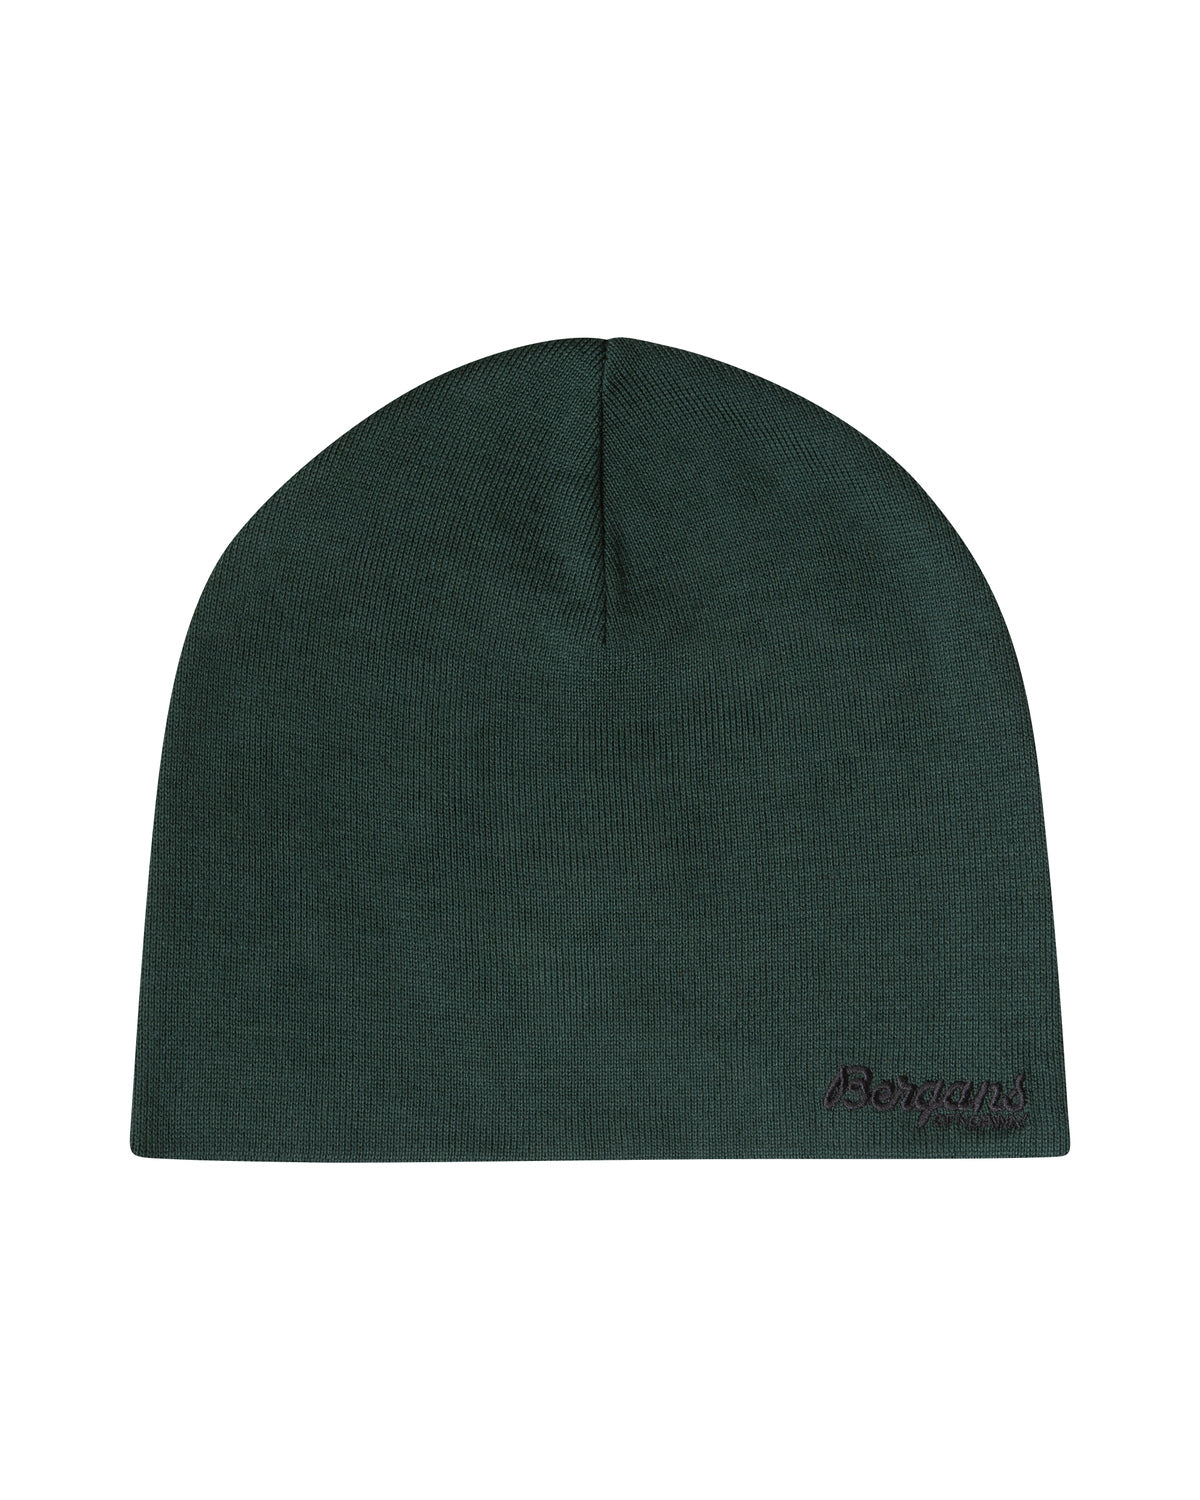 Bergans of Norway - Thin Beanie | merino wool hat